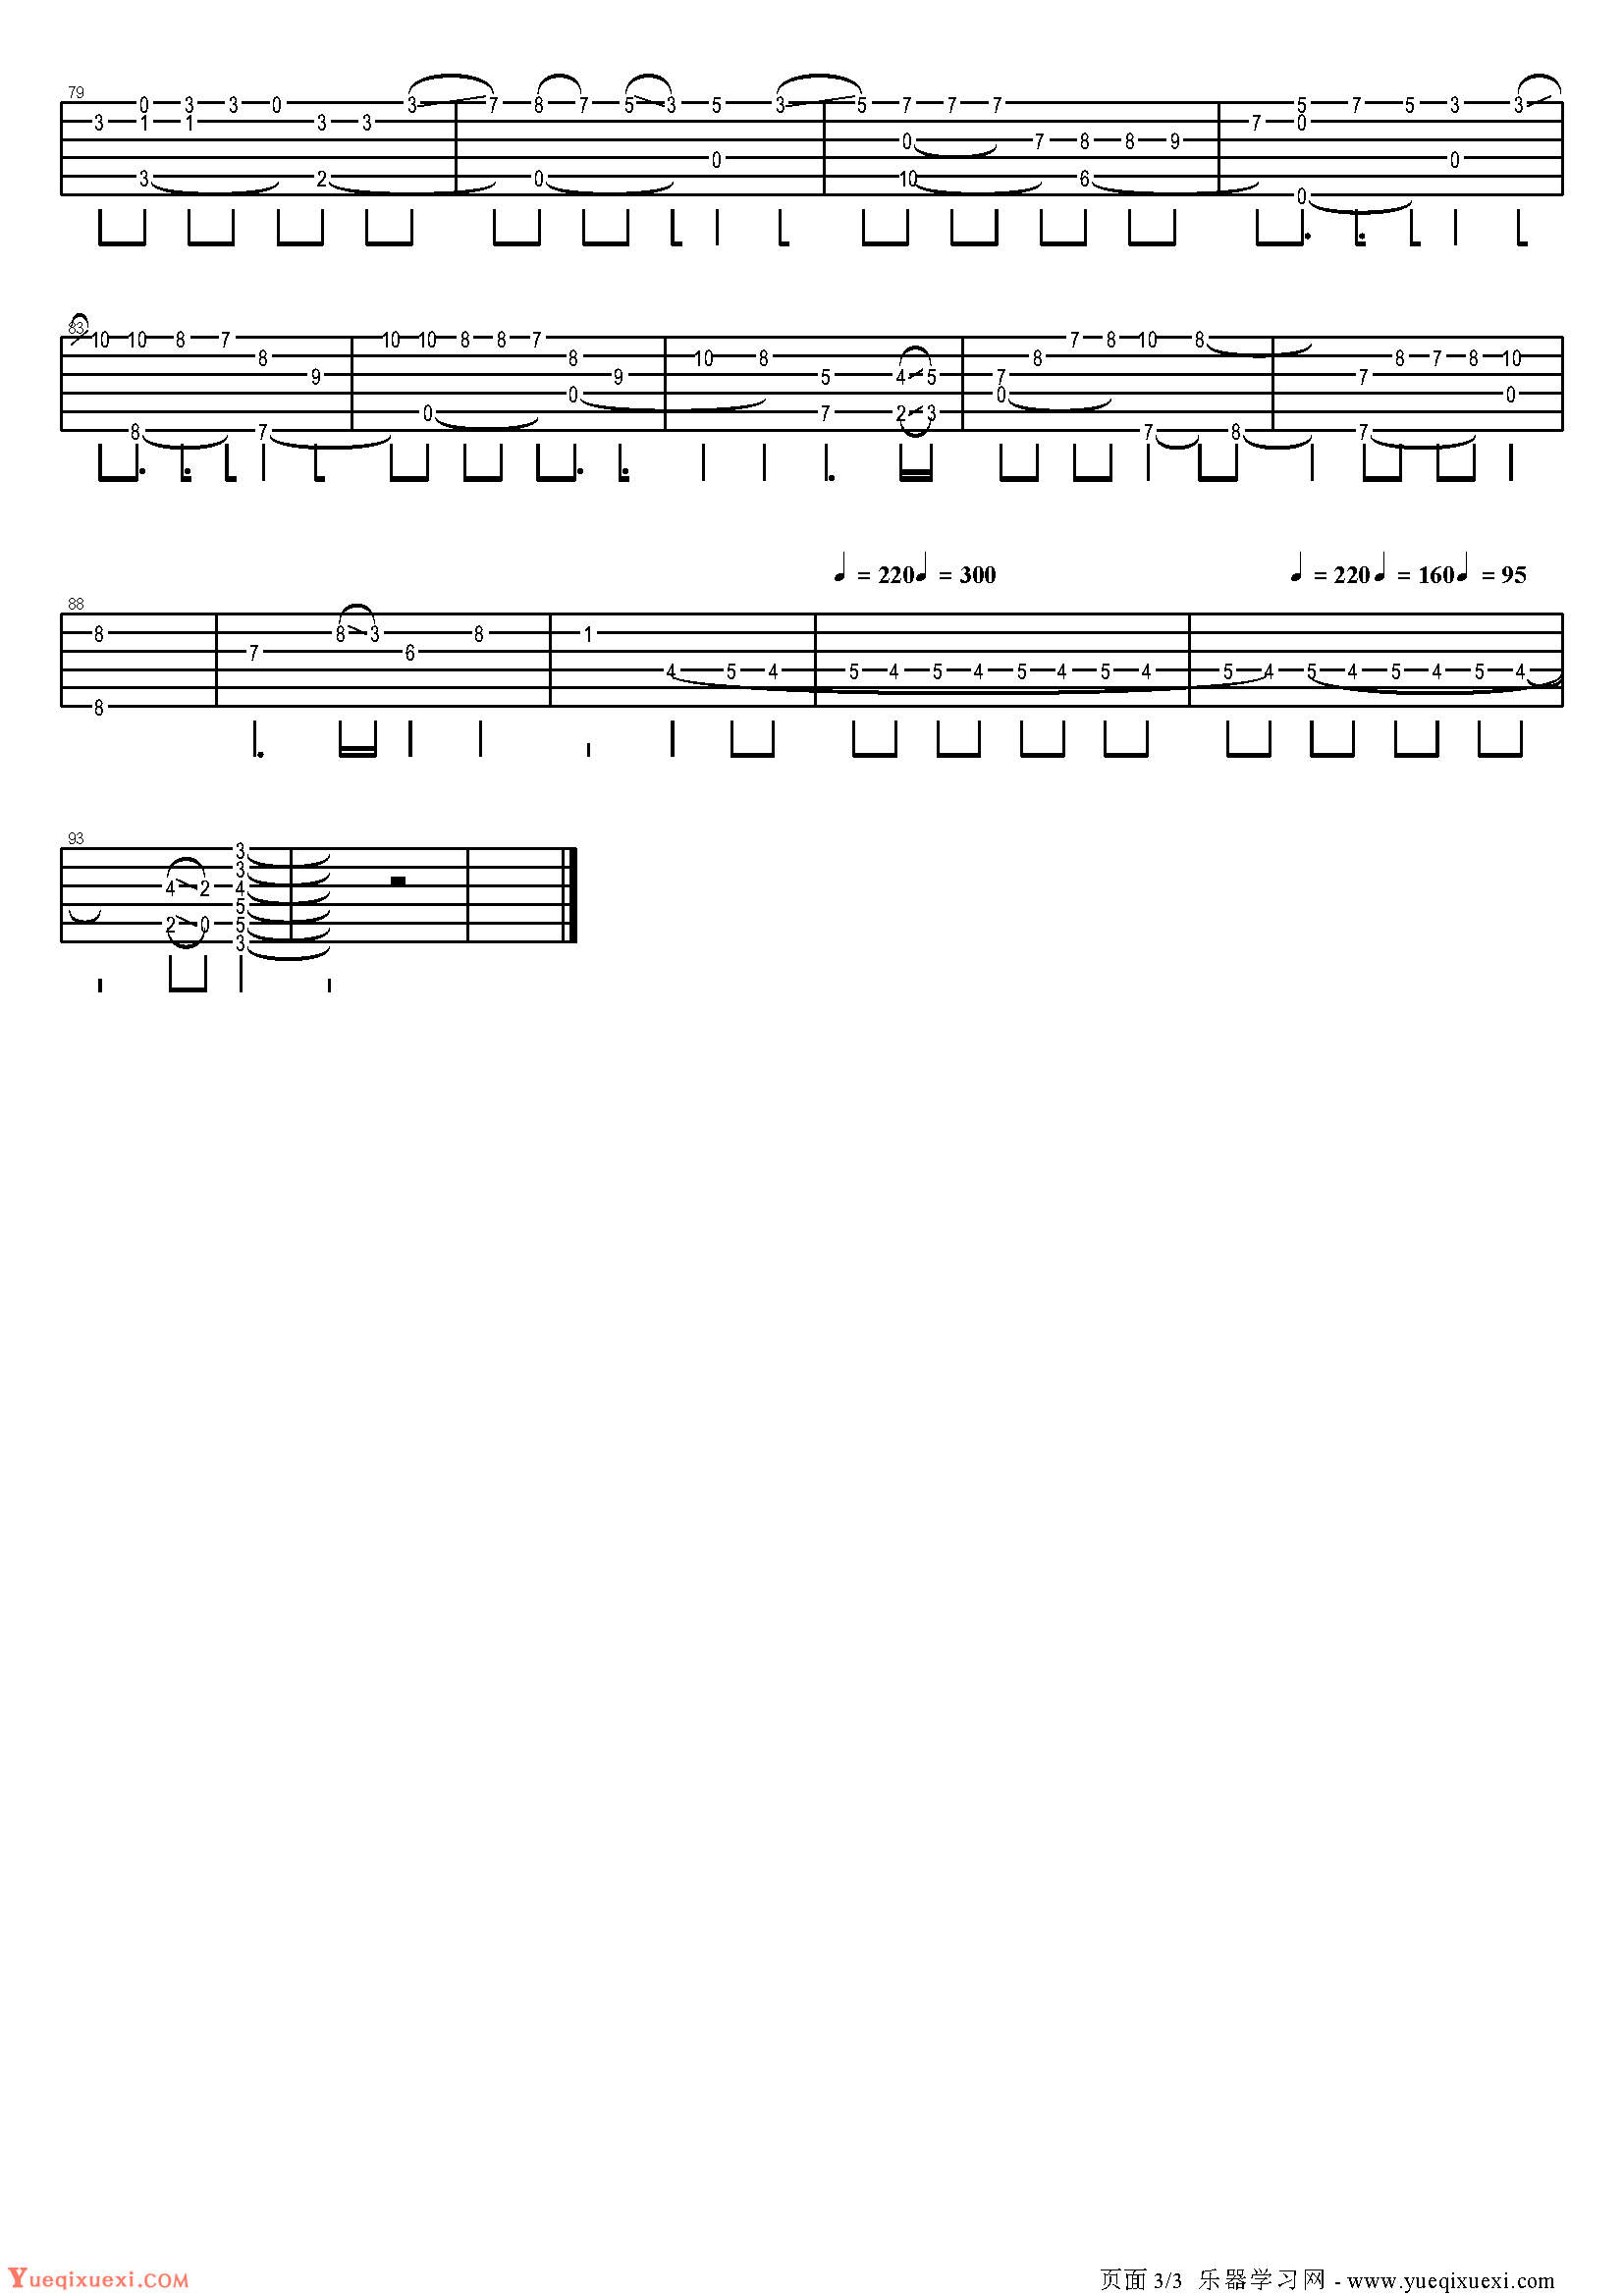 卢家宏吉他谱【候鸟】-吉他曲谱 - 乐器学习网